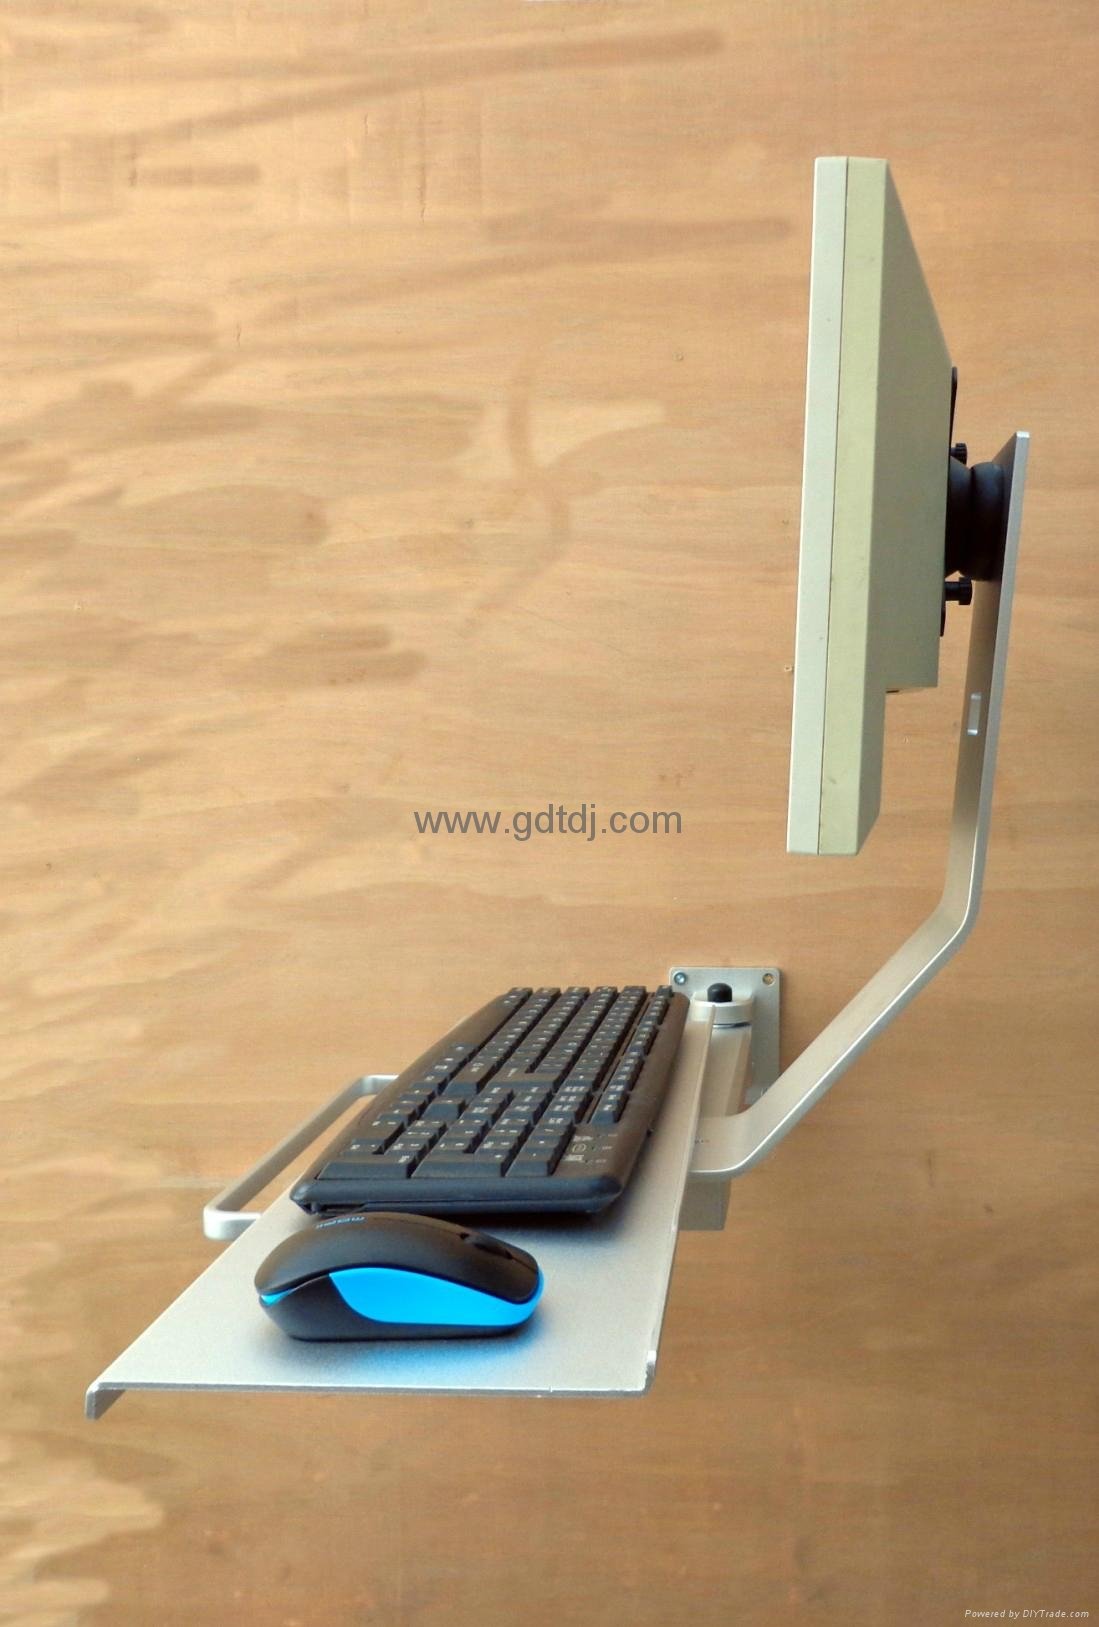 鍵盤顯示器壁挂架 鼠標鍵盤挂架 顯示器鍵盤支架 5